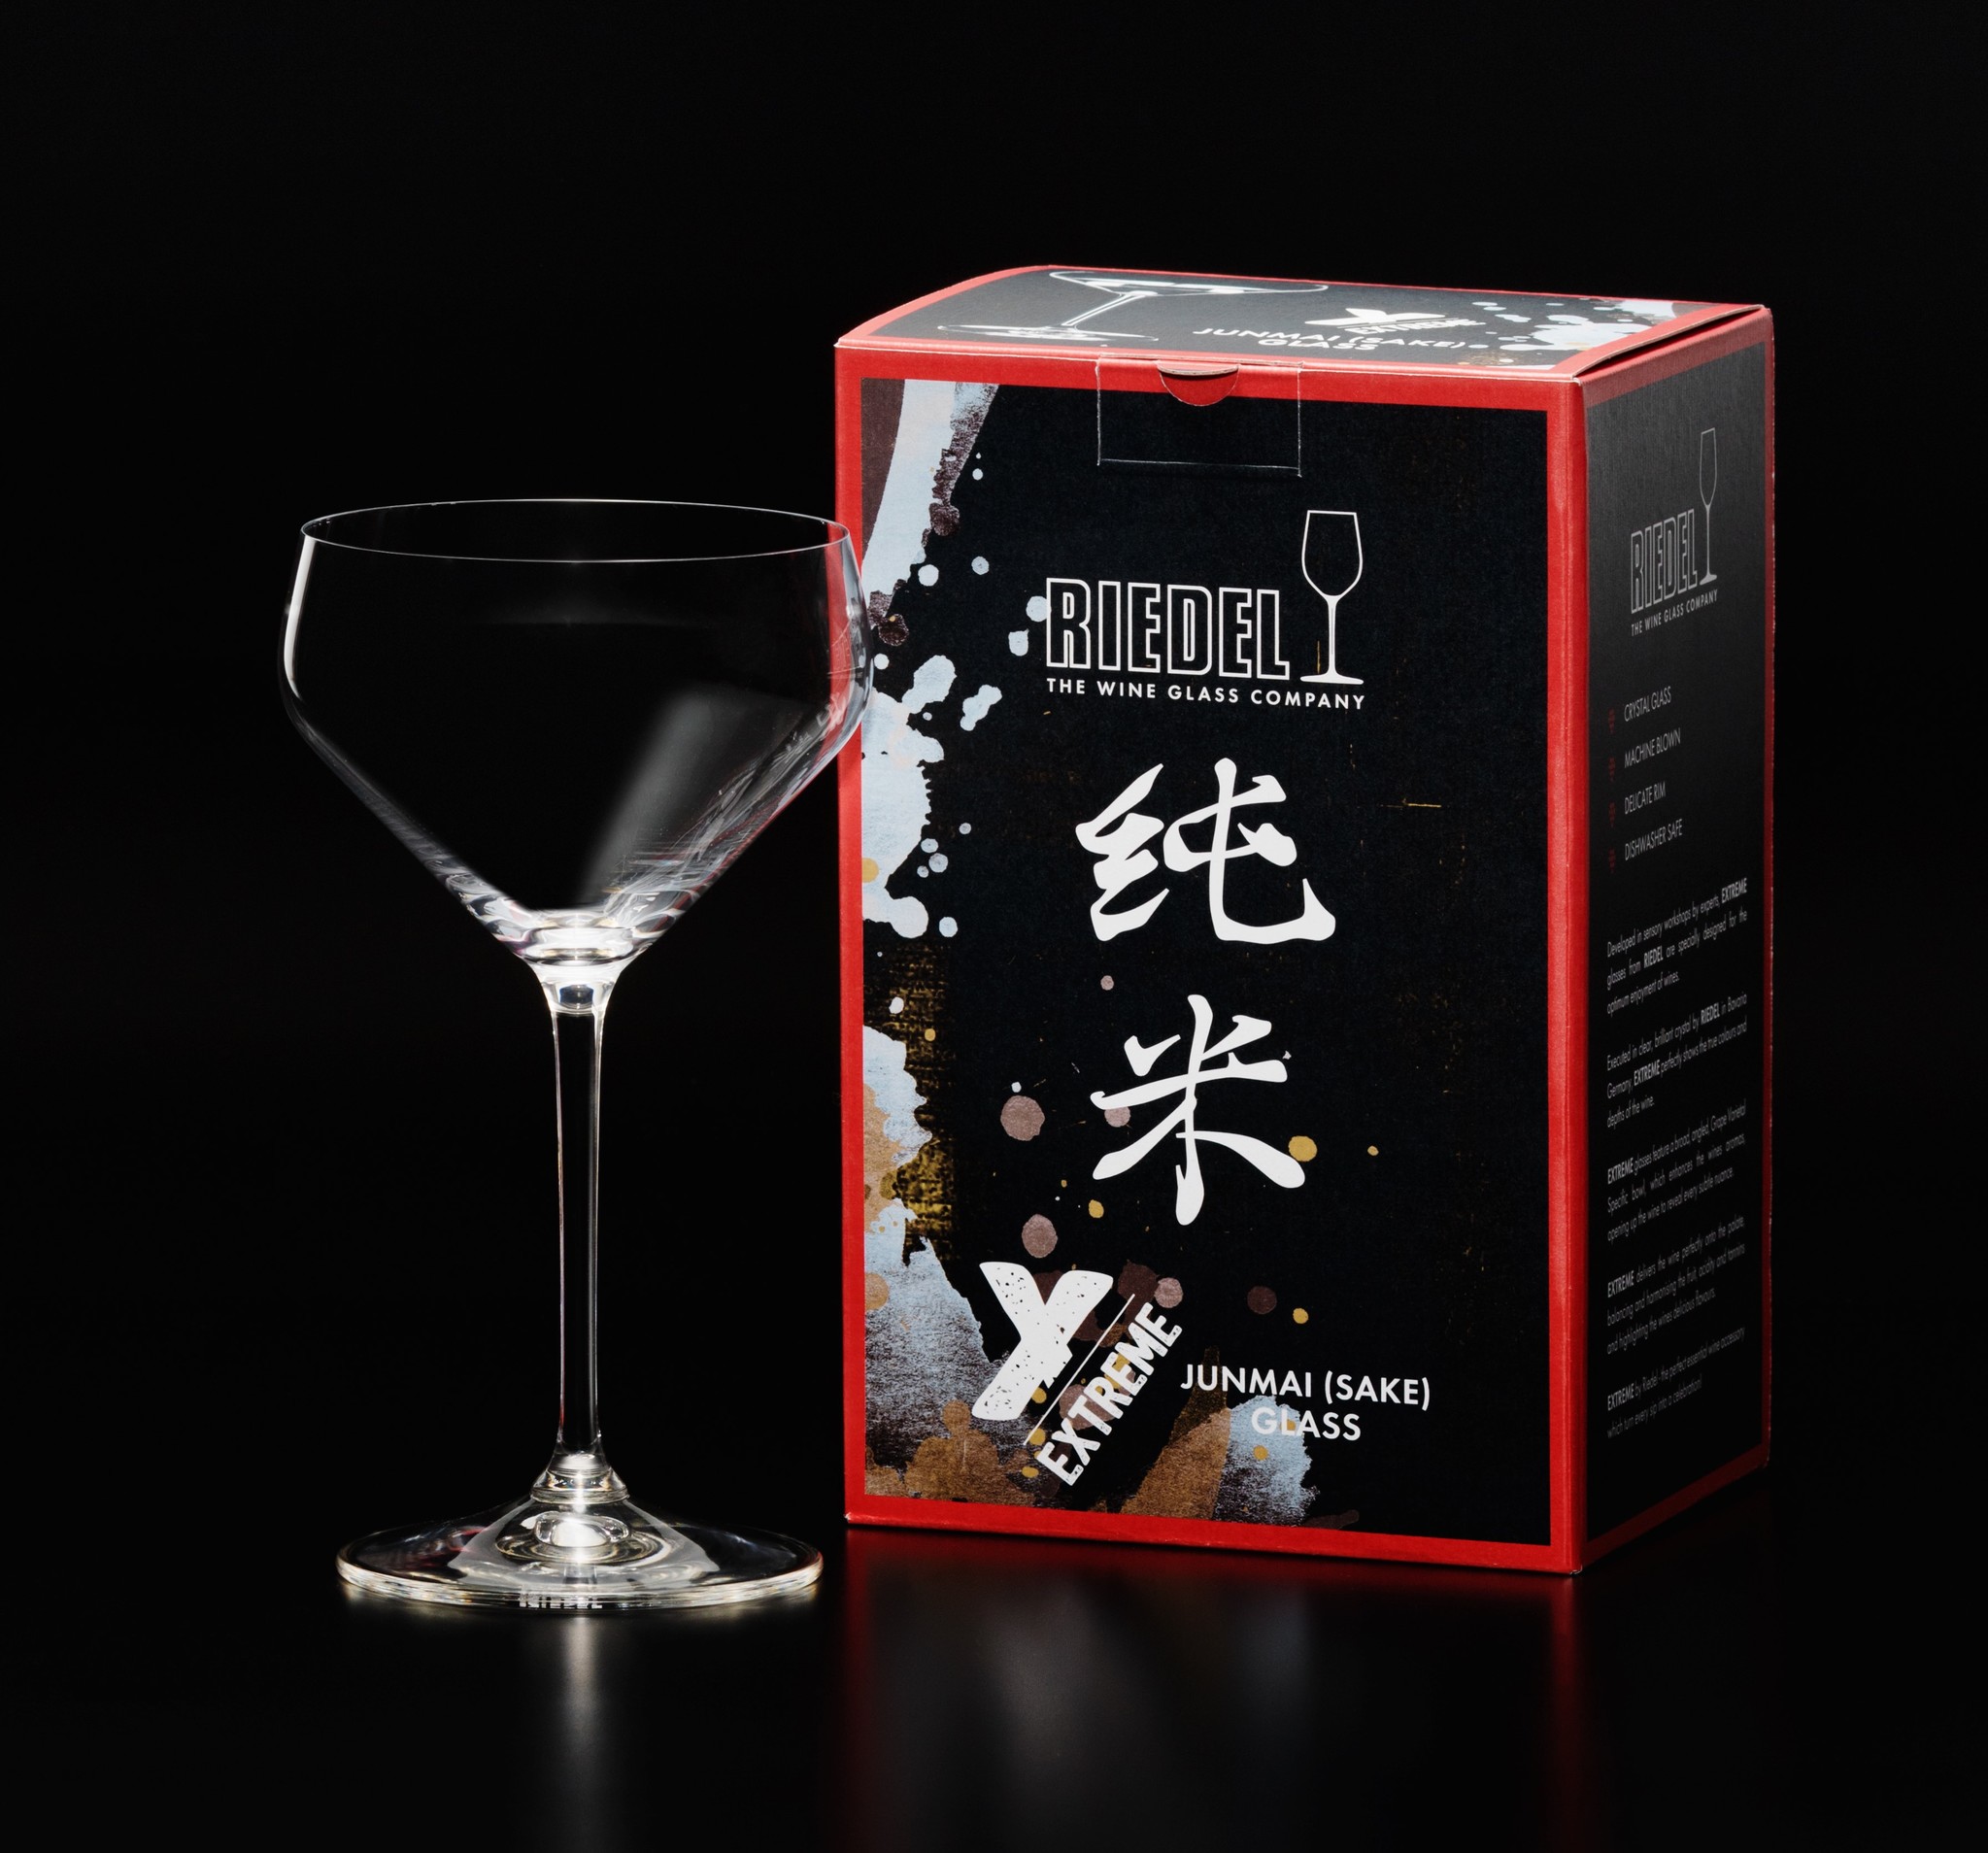 純米酒に特化したグラス形状を約8年かけて開発。リーデル『純米